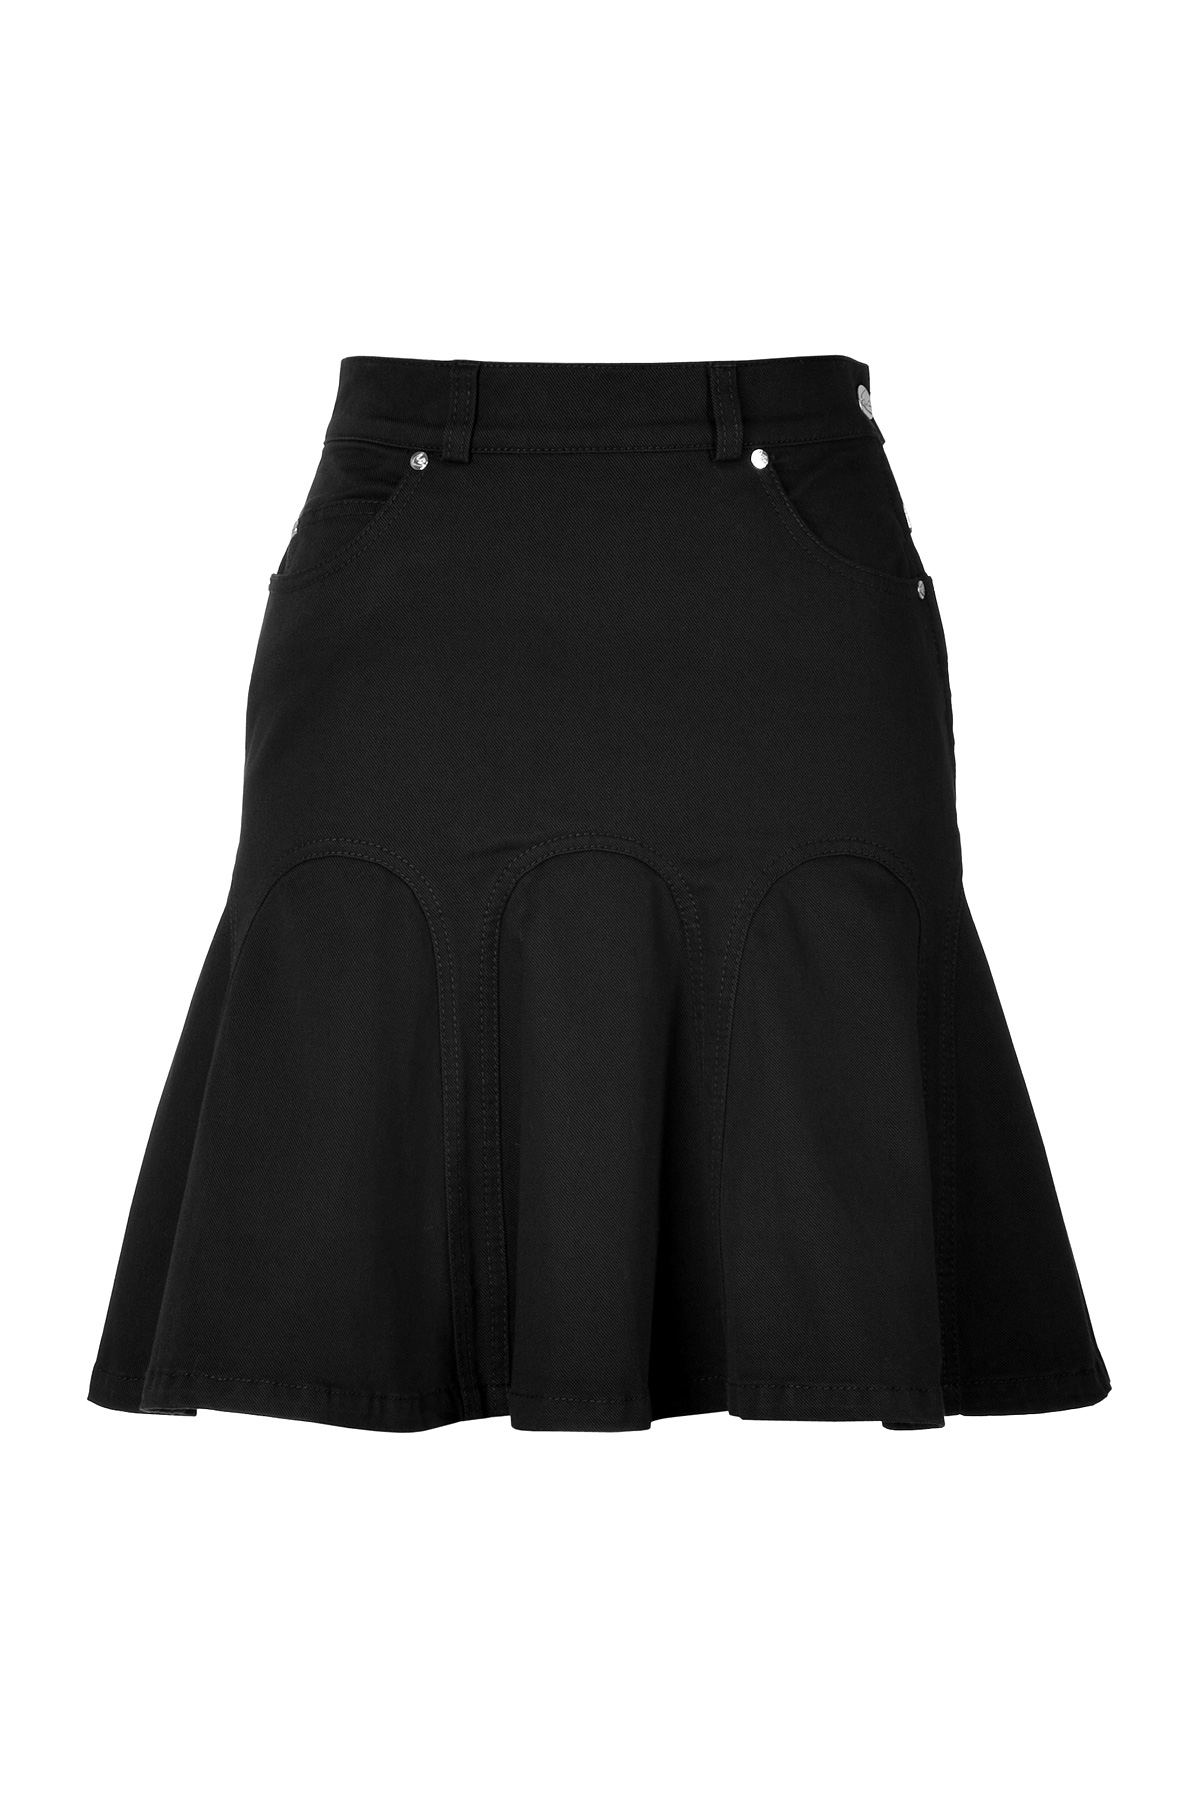 Lyst - Mcq Godet Denim Skirt in Black